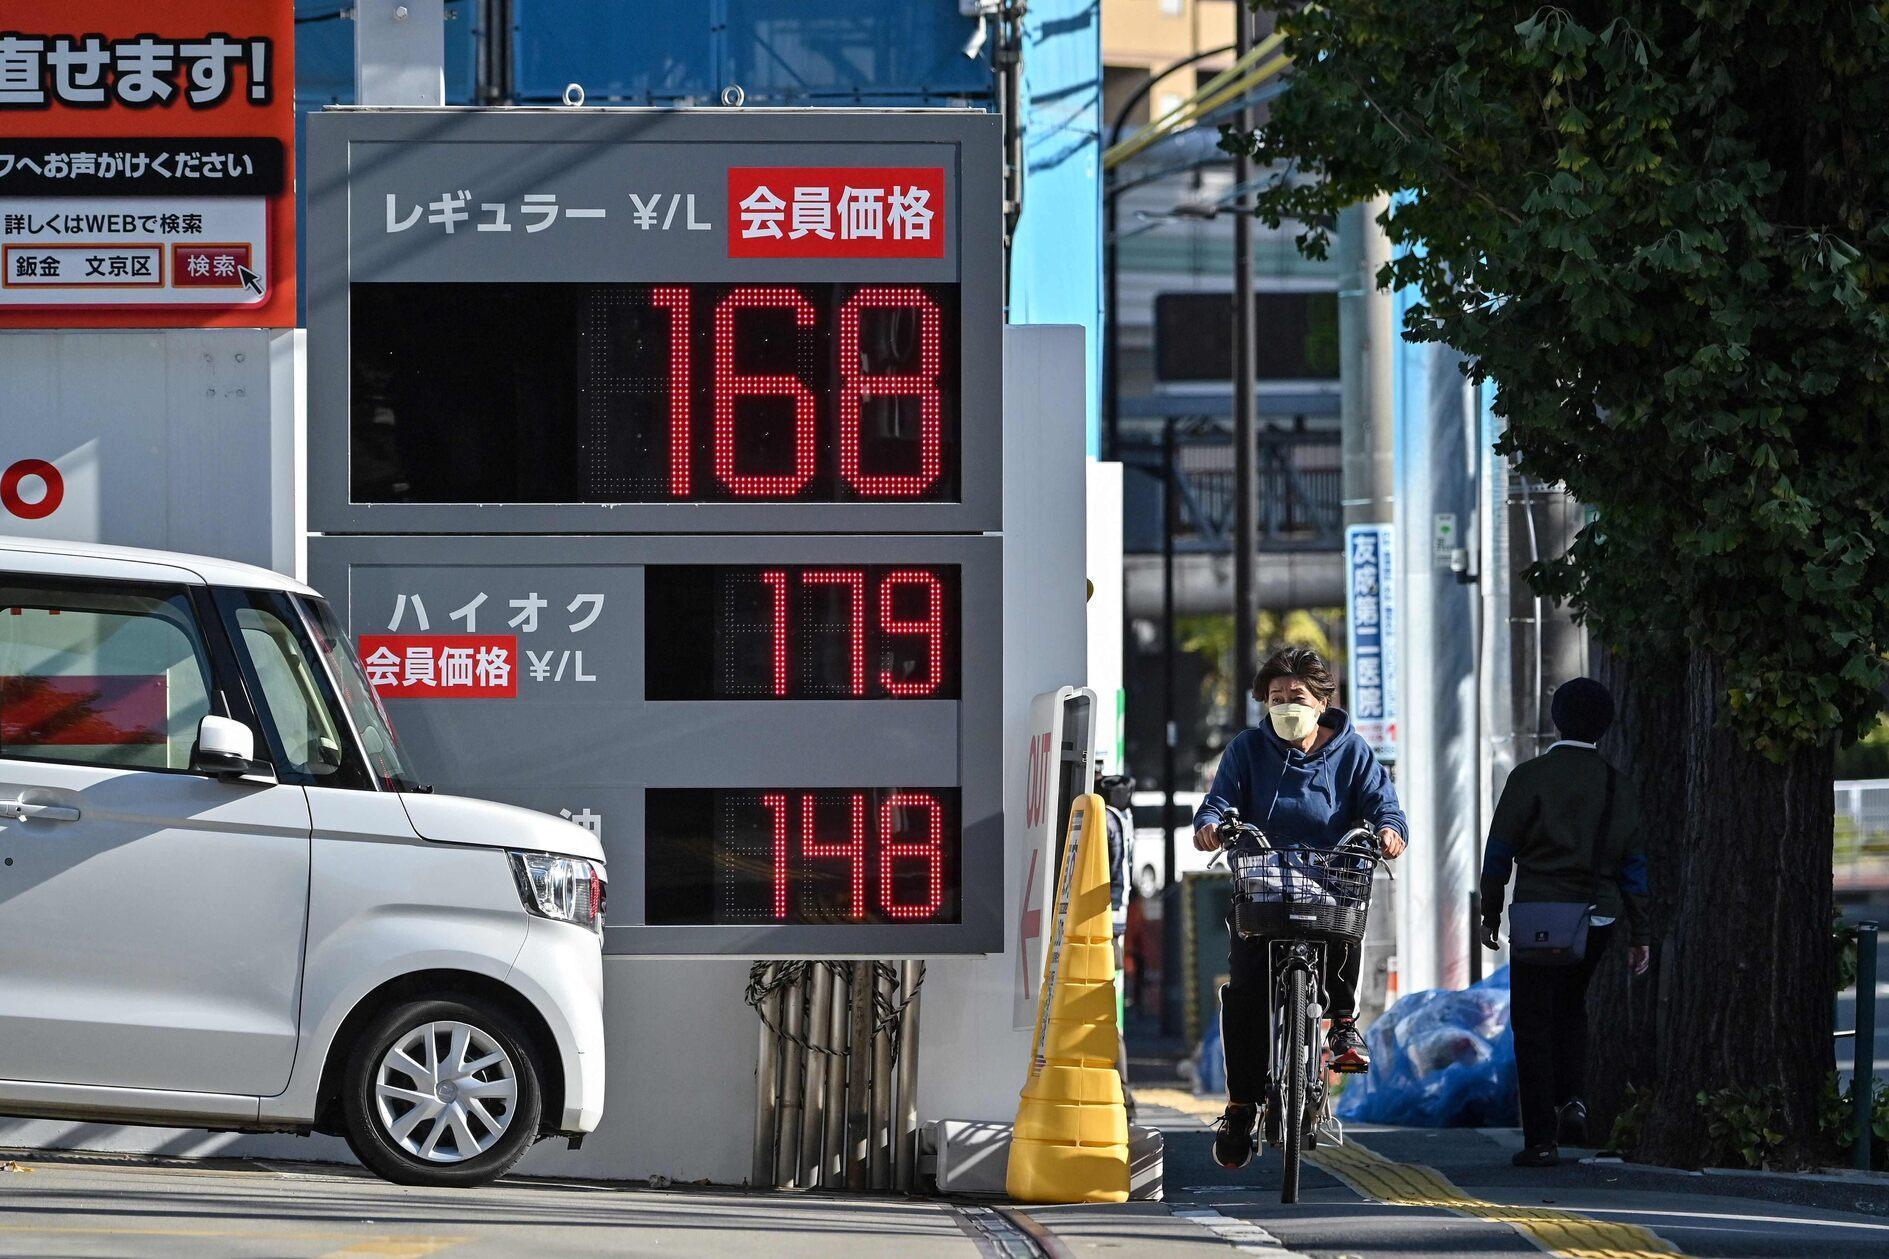 ECONOMIE Japanse inflatie stijgt met 2,9 procent De Japanse consumenteninflatie steeg in oktober met 2,9 procent op jaarbasis, nadat de overheid de subsidies voor elektriciteits- en gasrekeningen verlaagde, zo bleek uit overheidsgegevens op 24 november.